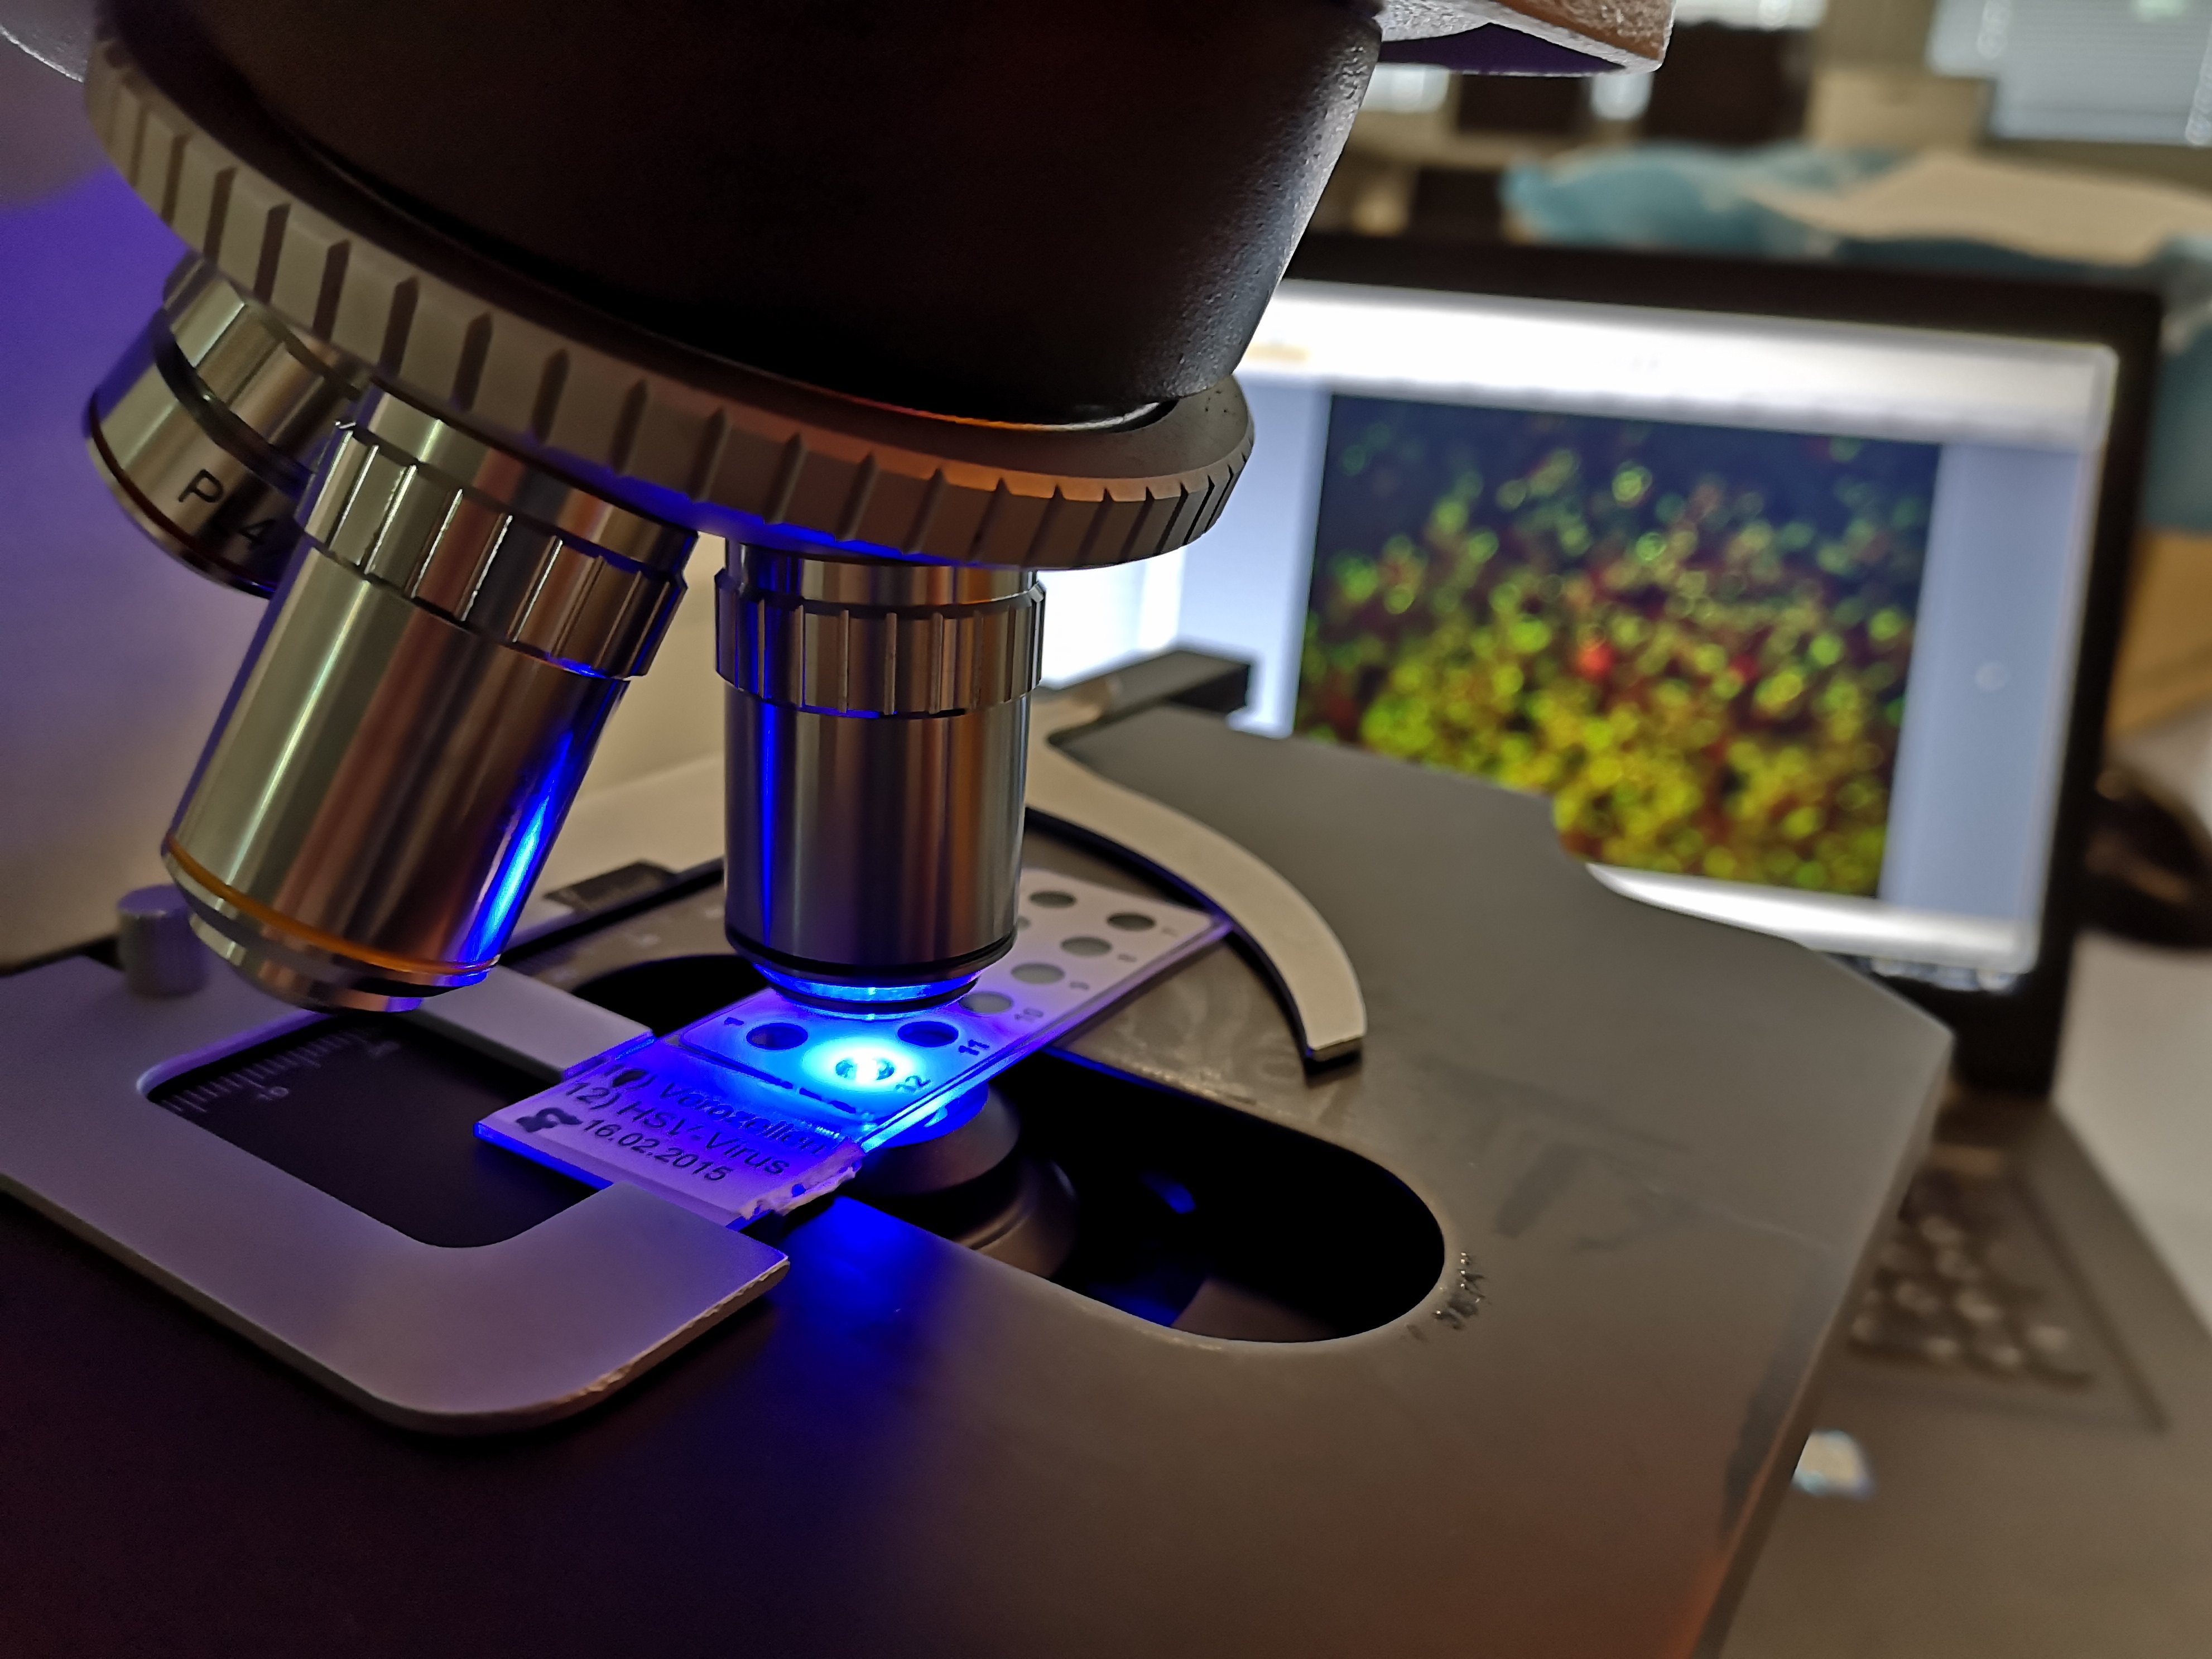 Das Bild zeigt ein Präparat unter einem Fluoreszenzmikroskop. Im Hintergrund ist das aufgenommene Bild auf einem Laptop zu sehen.